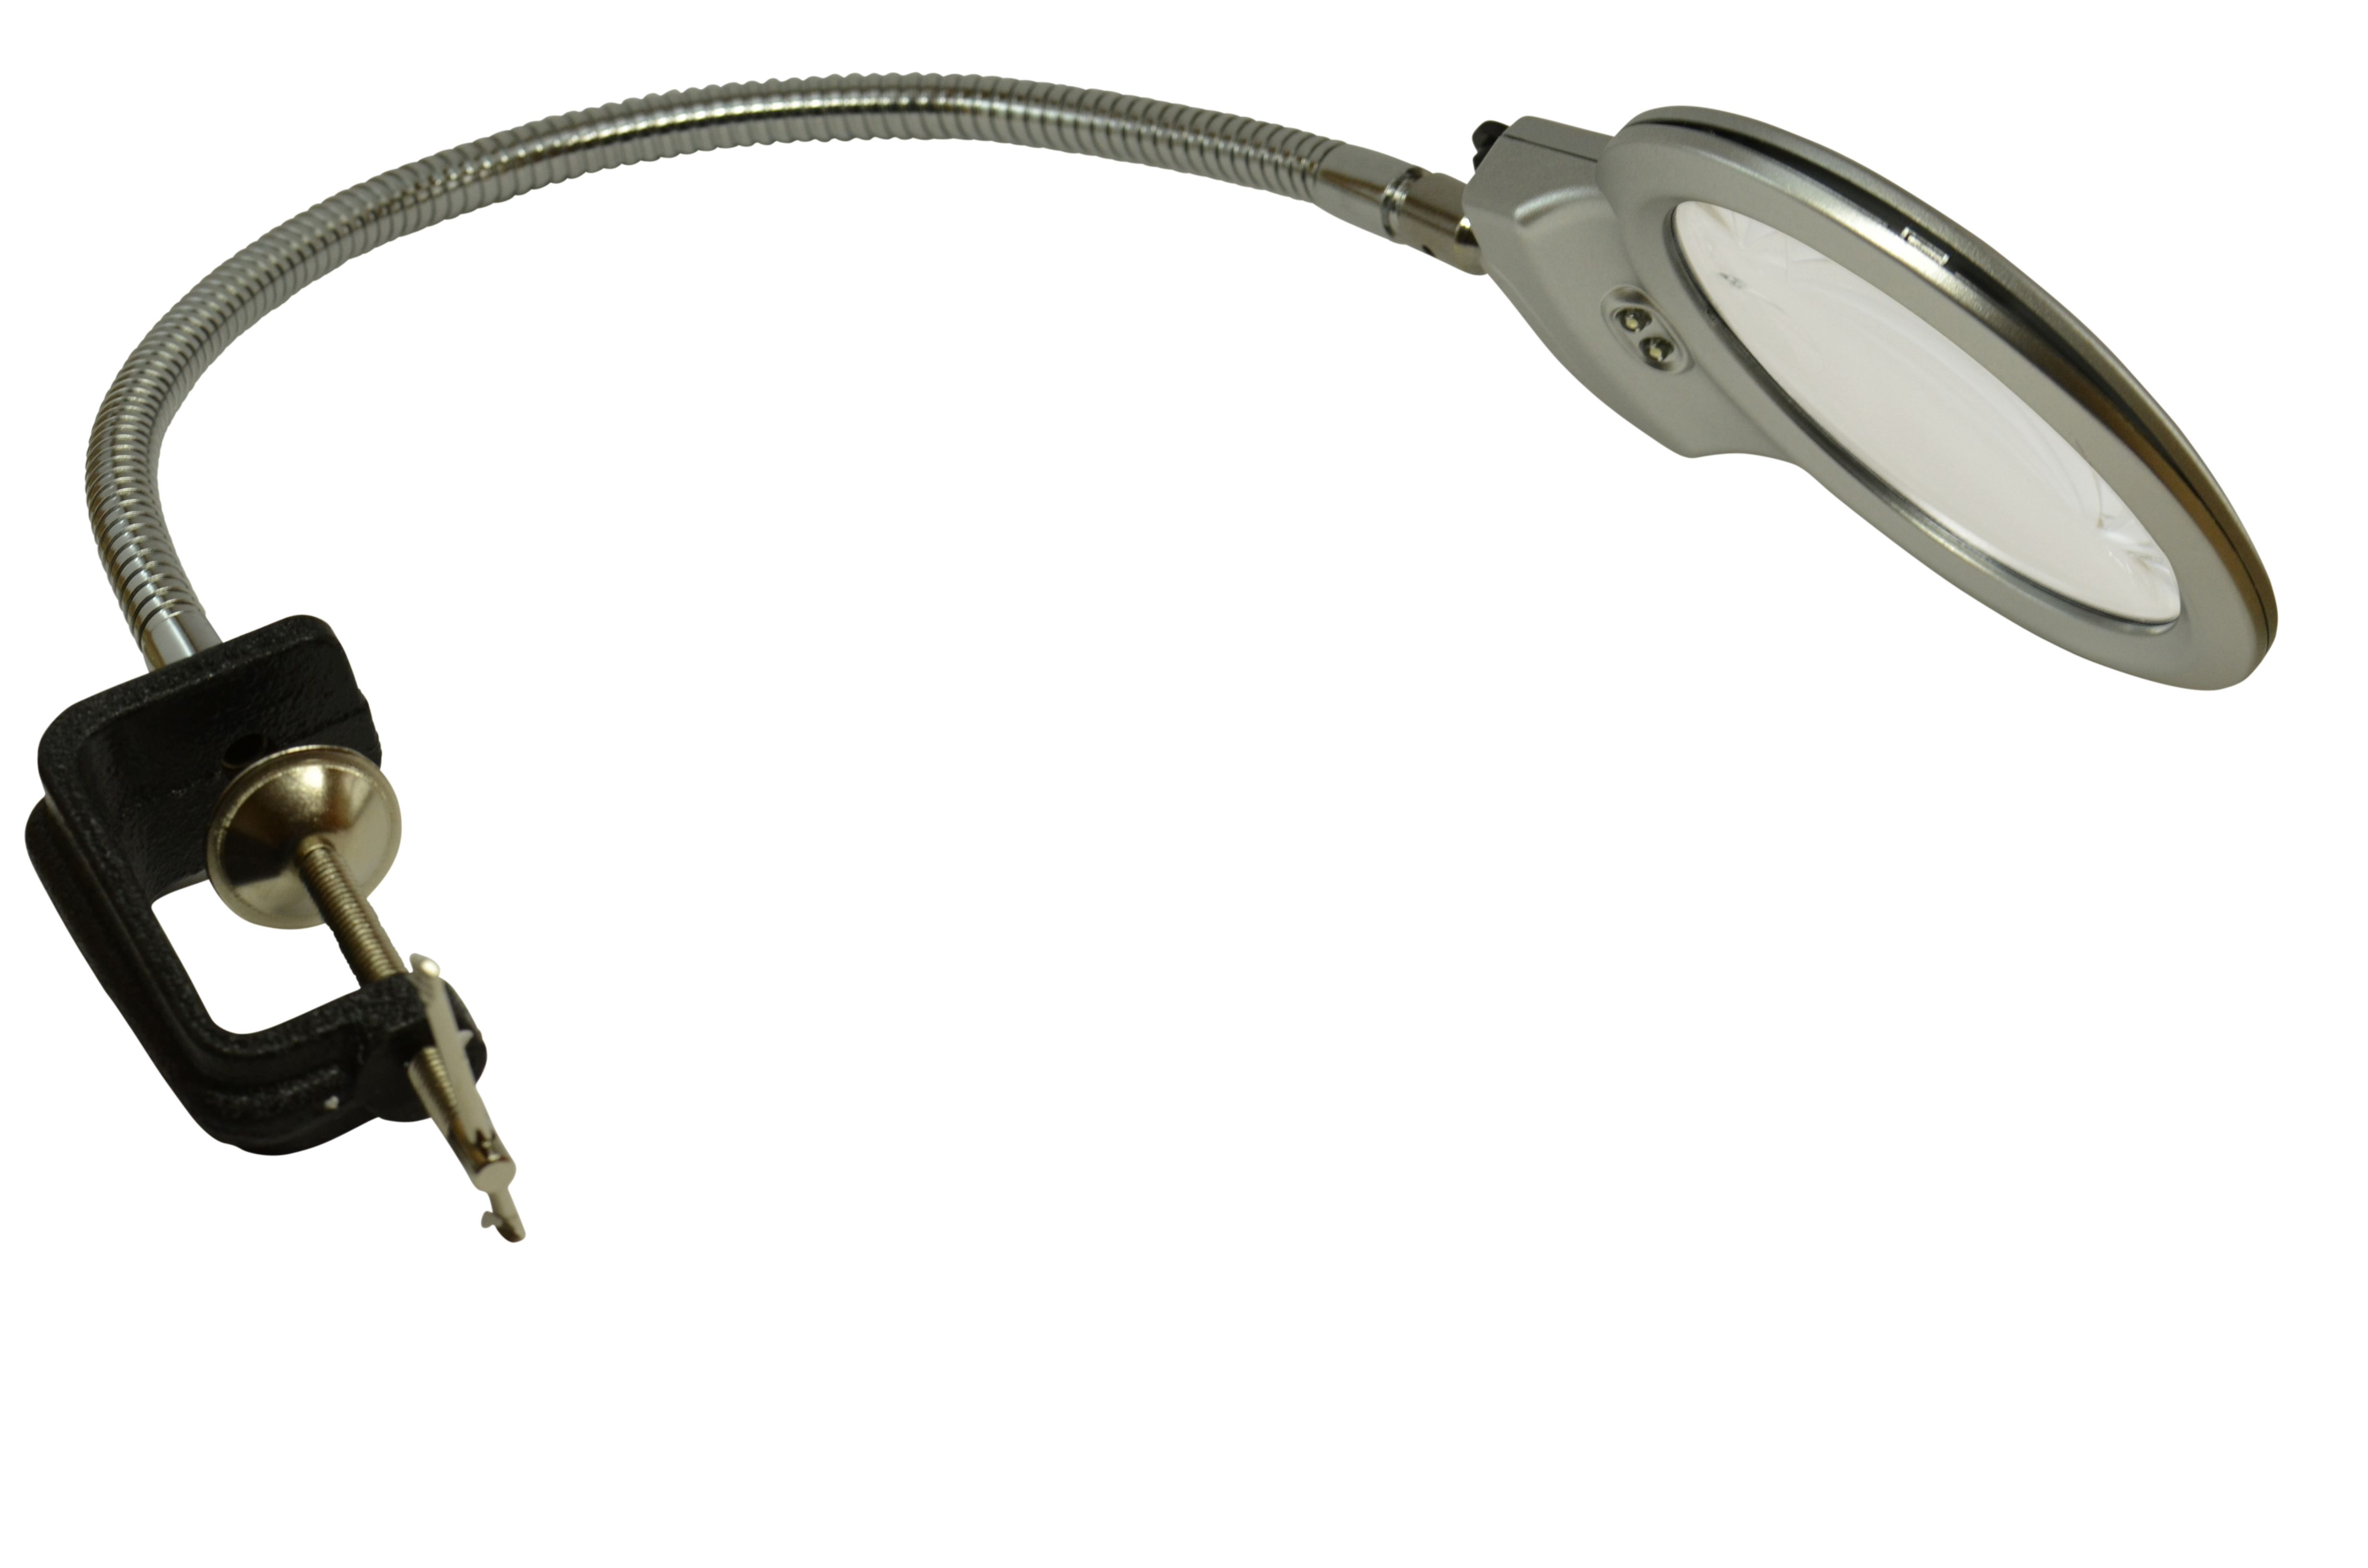 2 Lupenleuchte - CH Lampenhals) bifocal, Lupen-Center LED (flexibler